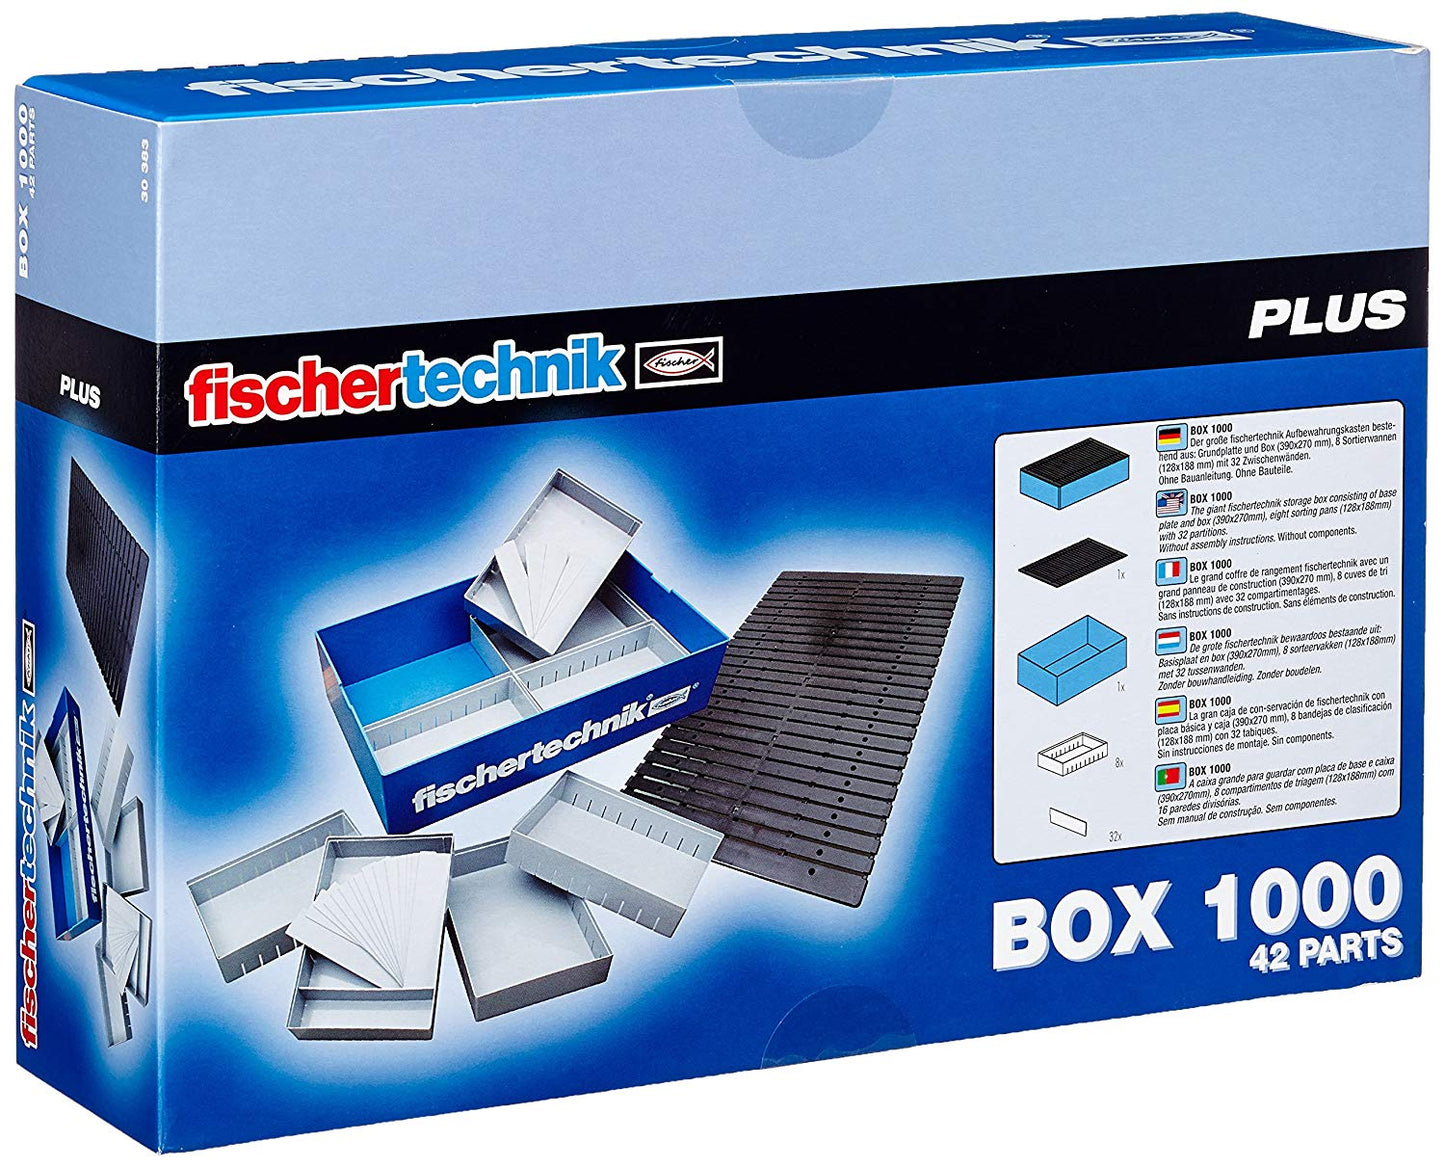 fischertechnik Box 1000, Storage Boxes